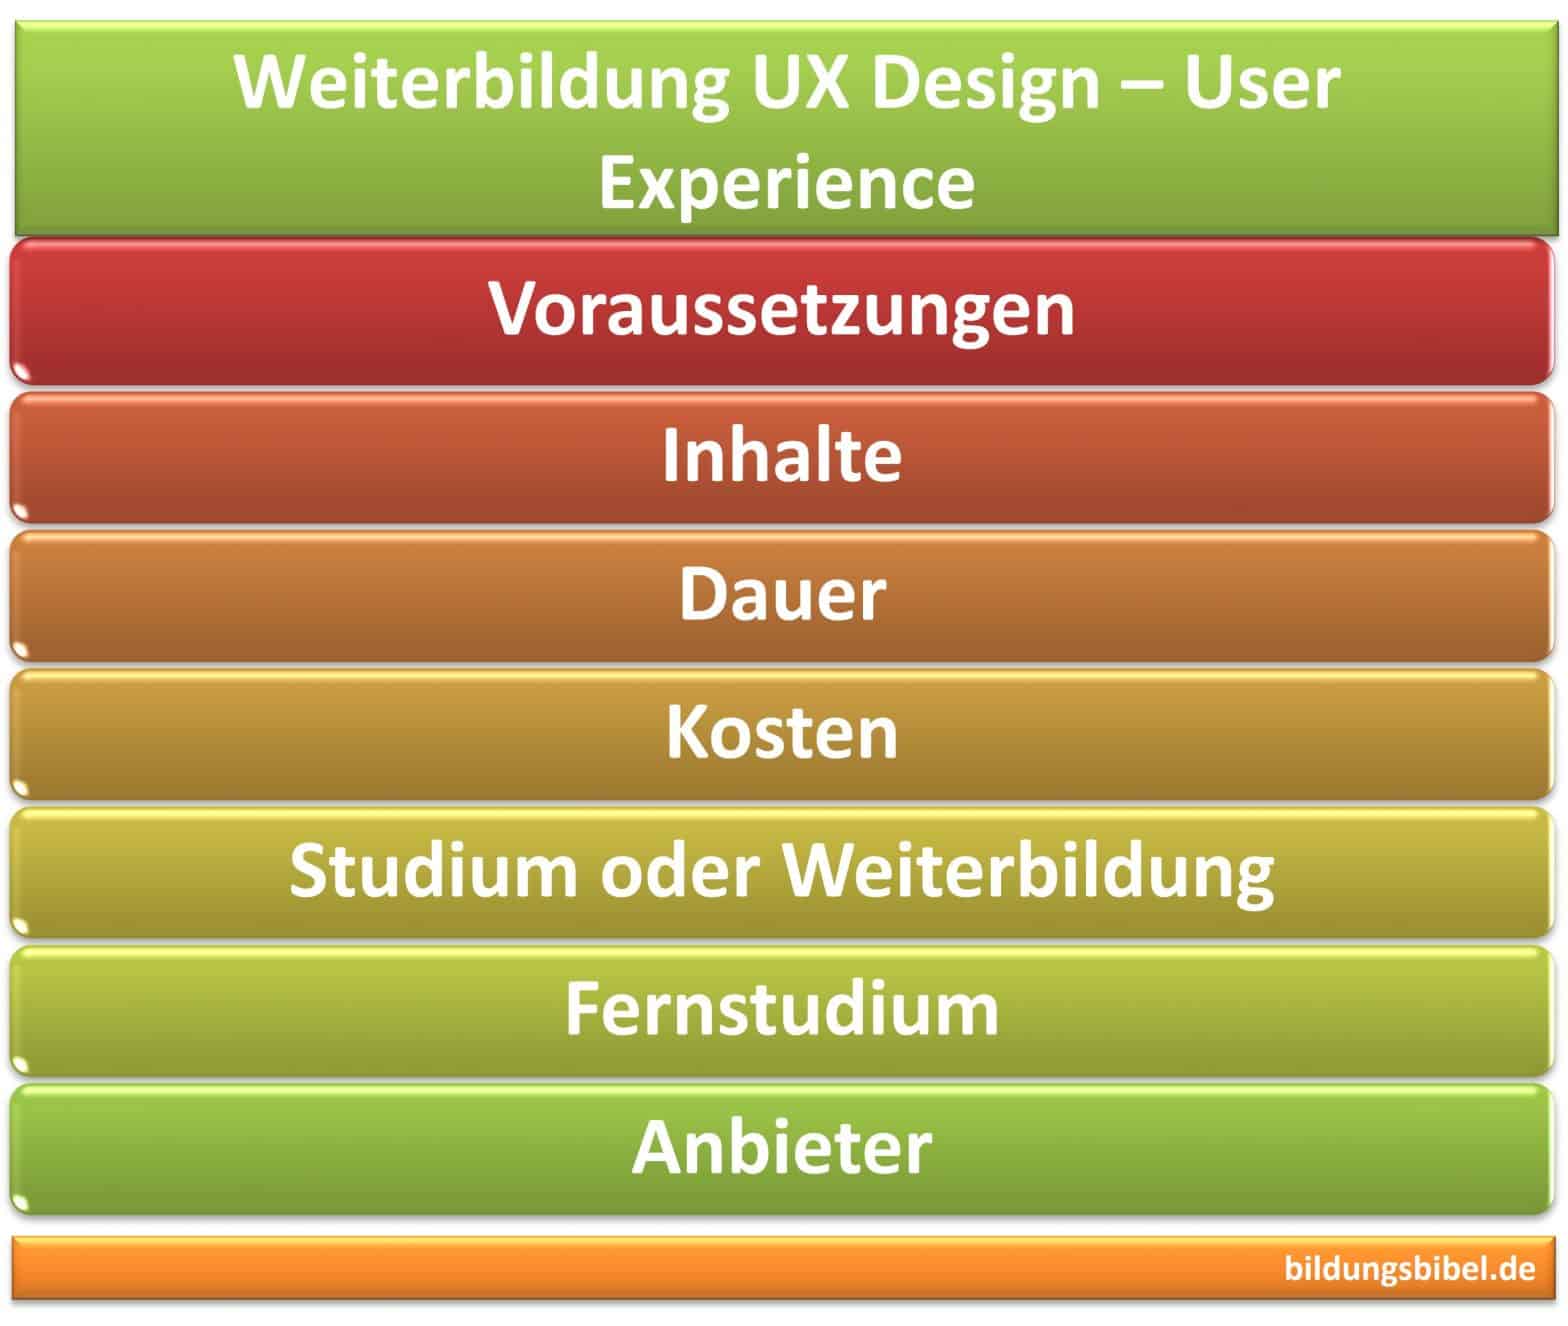 Weiterbildung UX Design, User Experience, Inhalte, Kosten, Voraussetzungen, Dauer, UX Designer werden, Fernstudium, Anbieter.